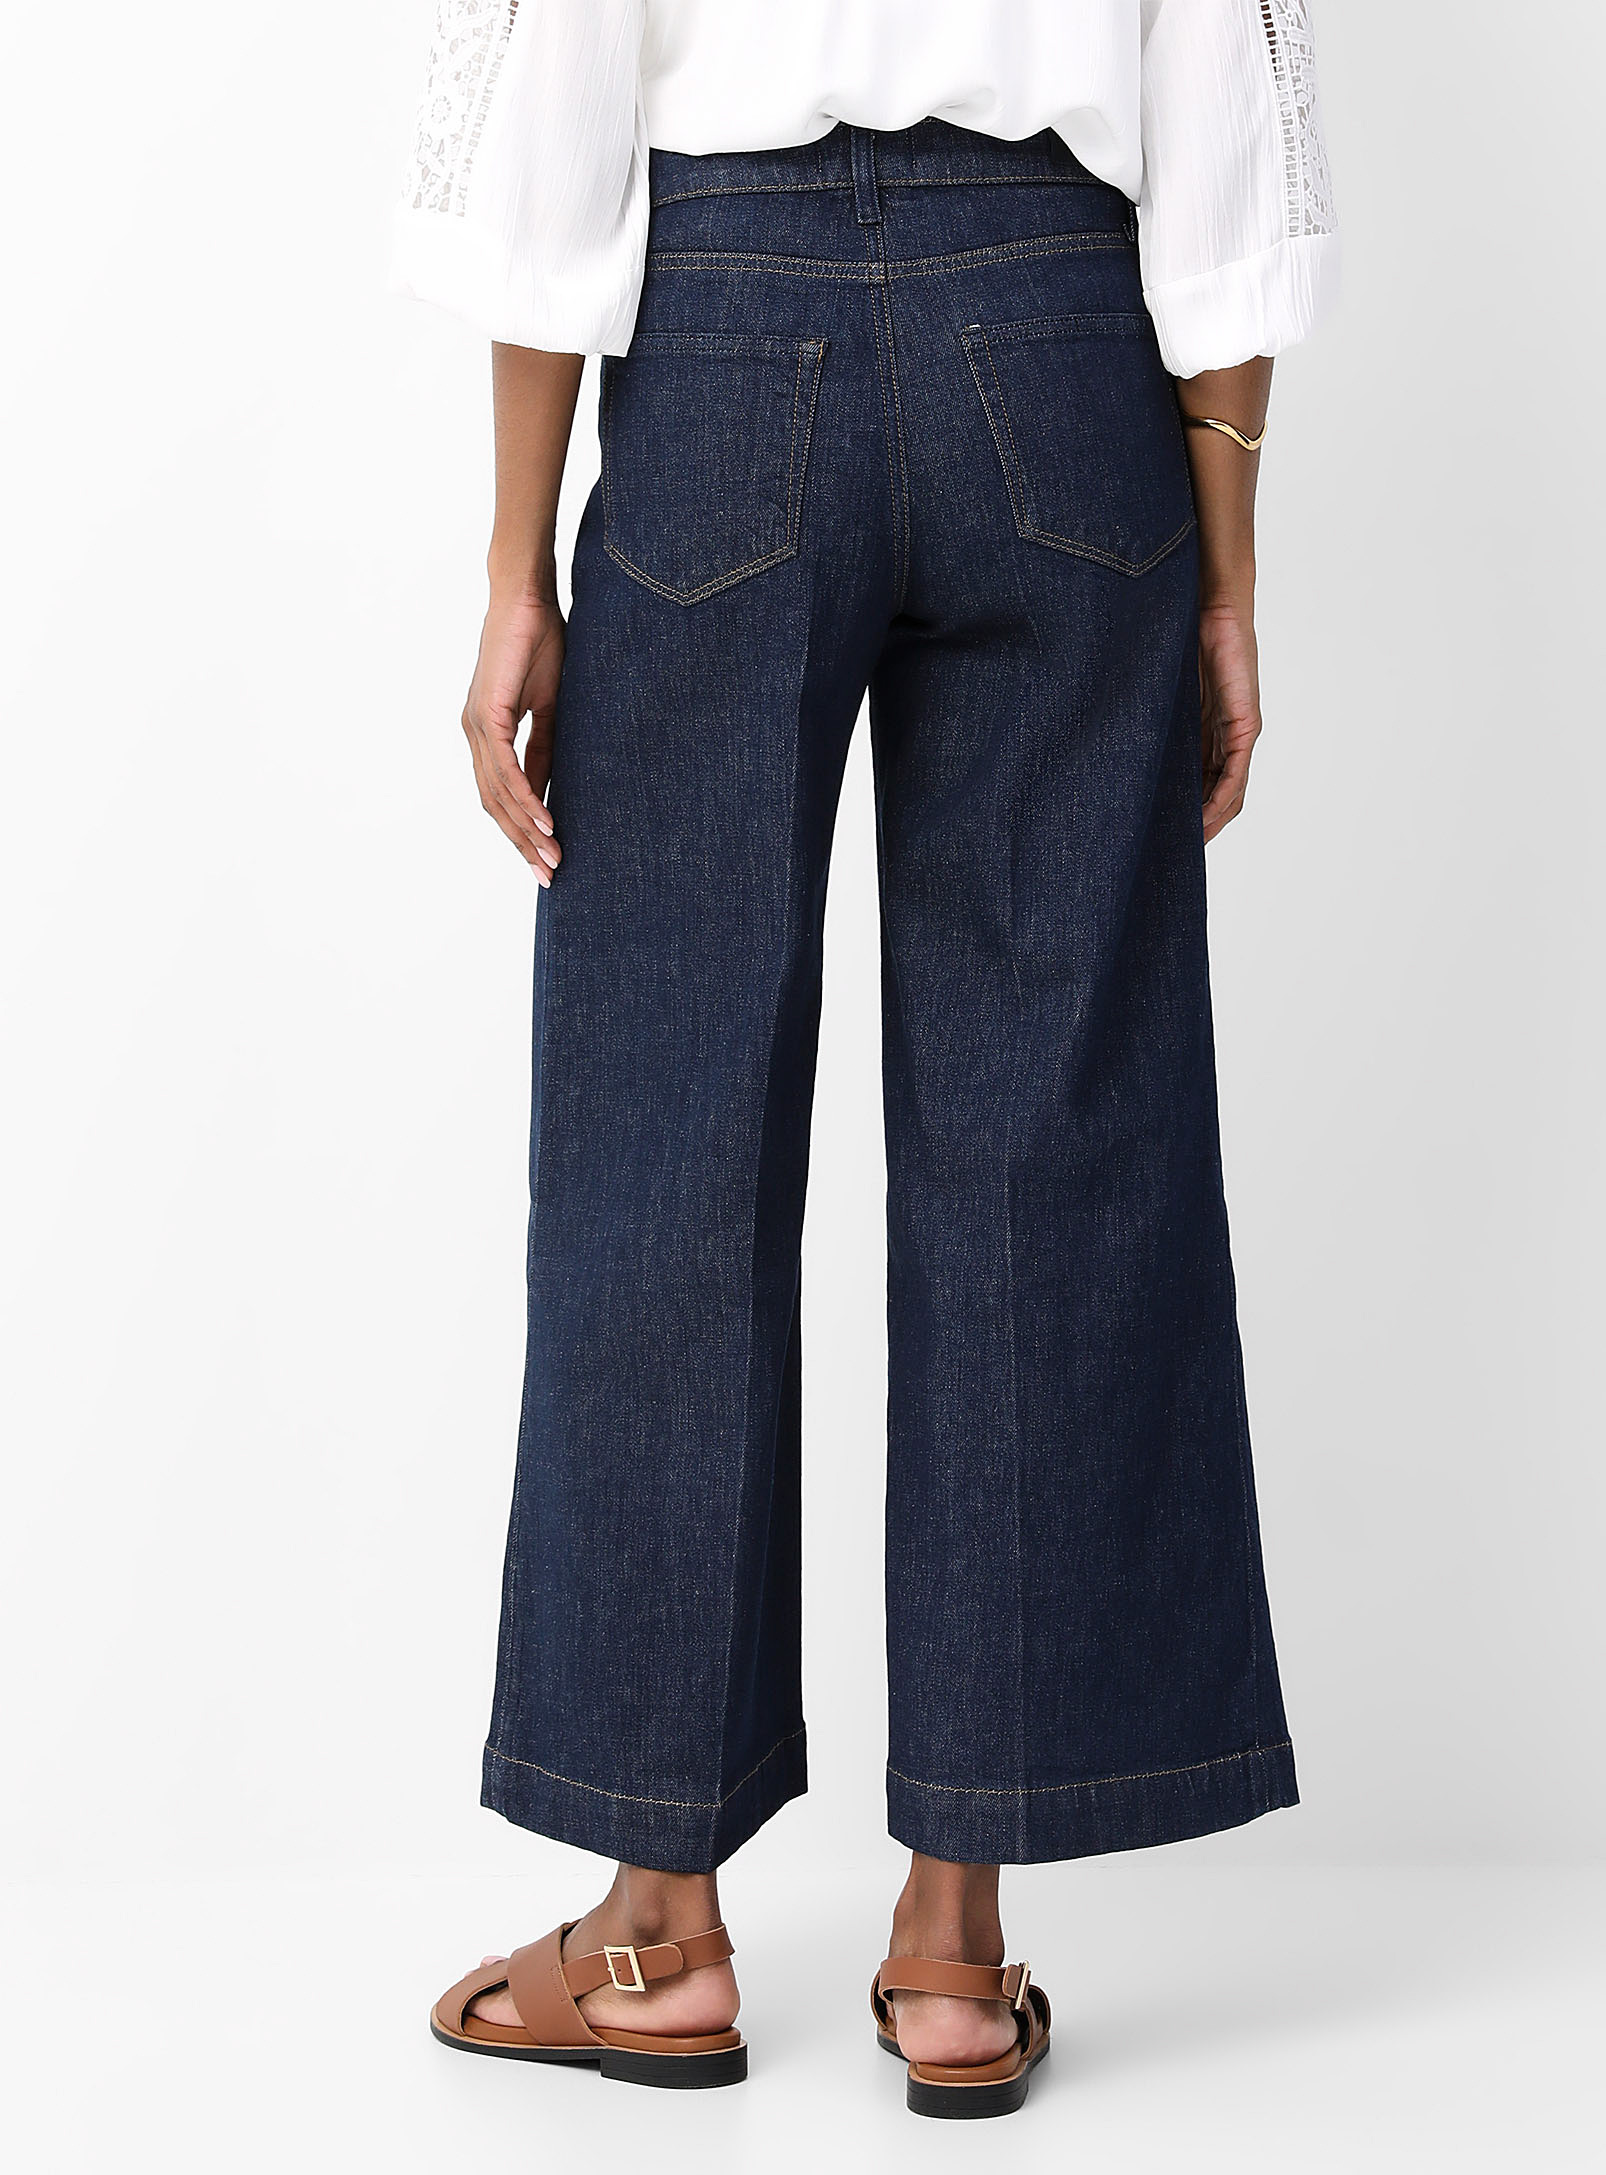 Paige - Le jean large Harper poches plaquées